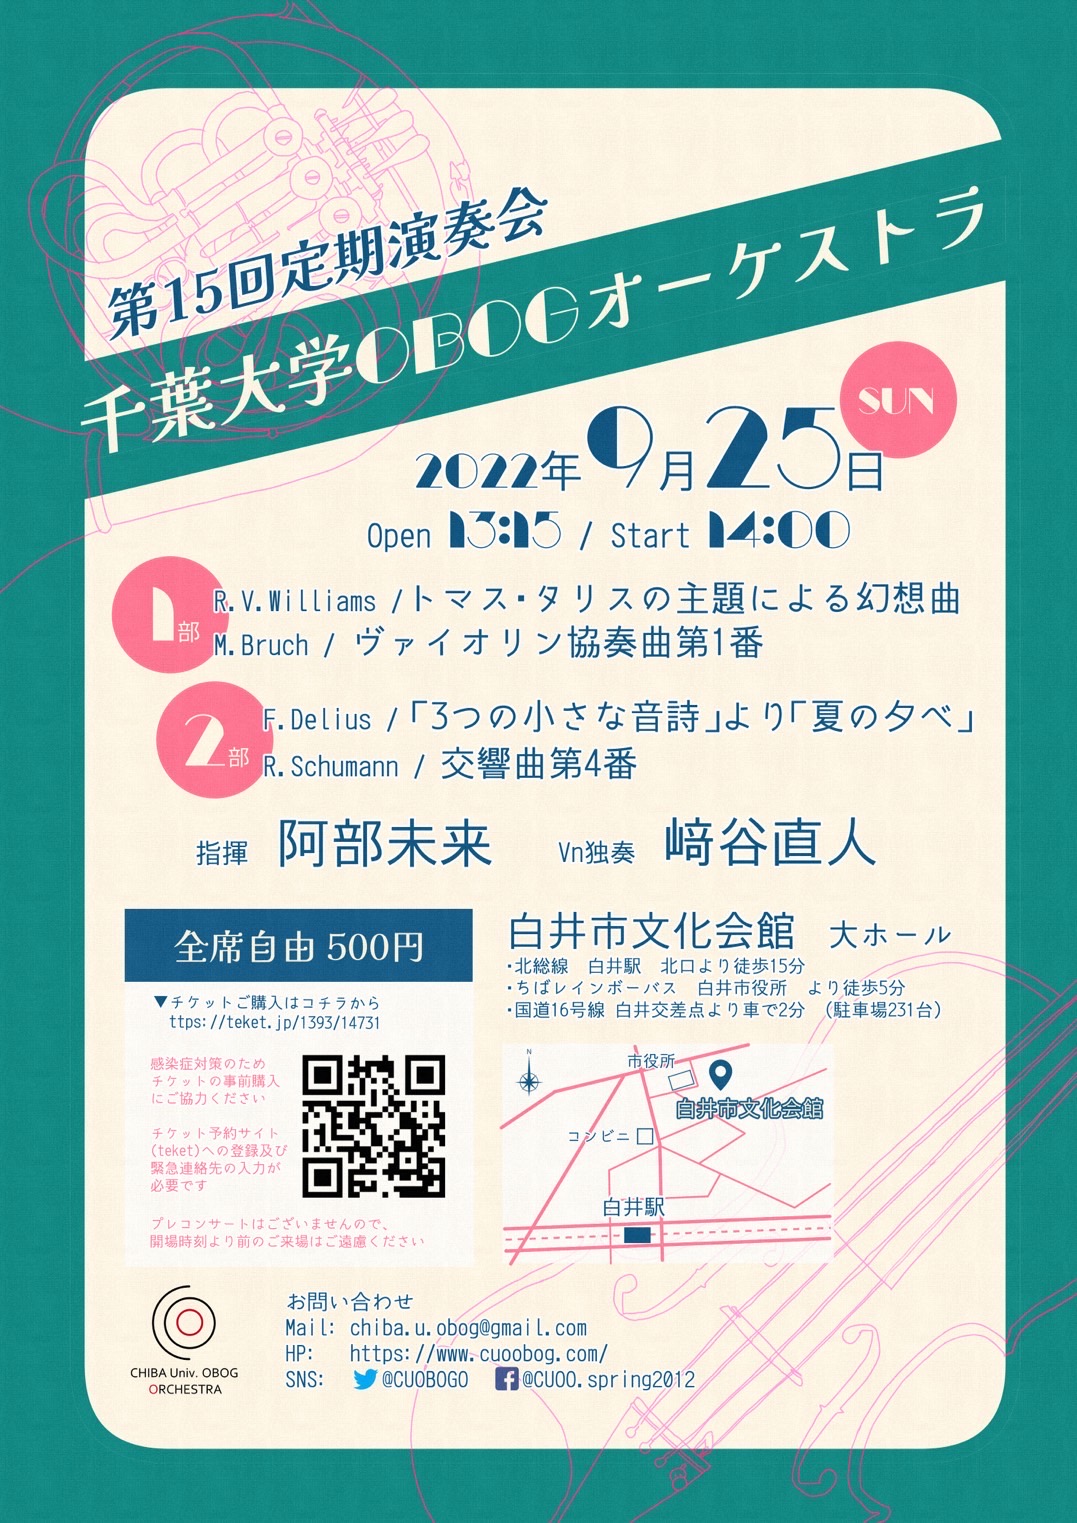 千葉大学OBOGオーケストラ第15回定期演奏会のフライヤー画像